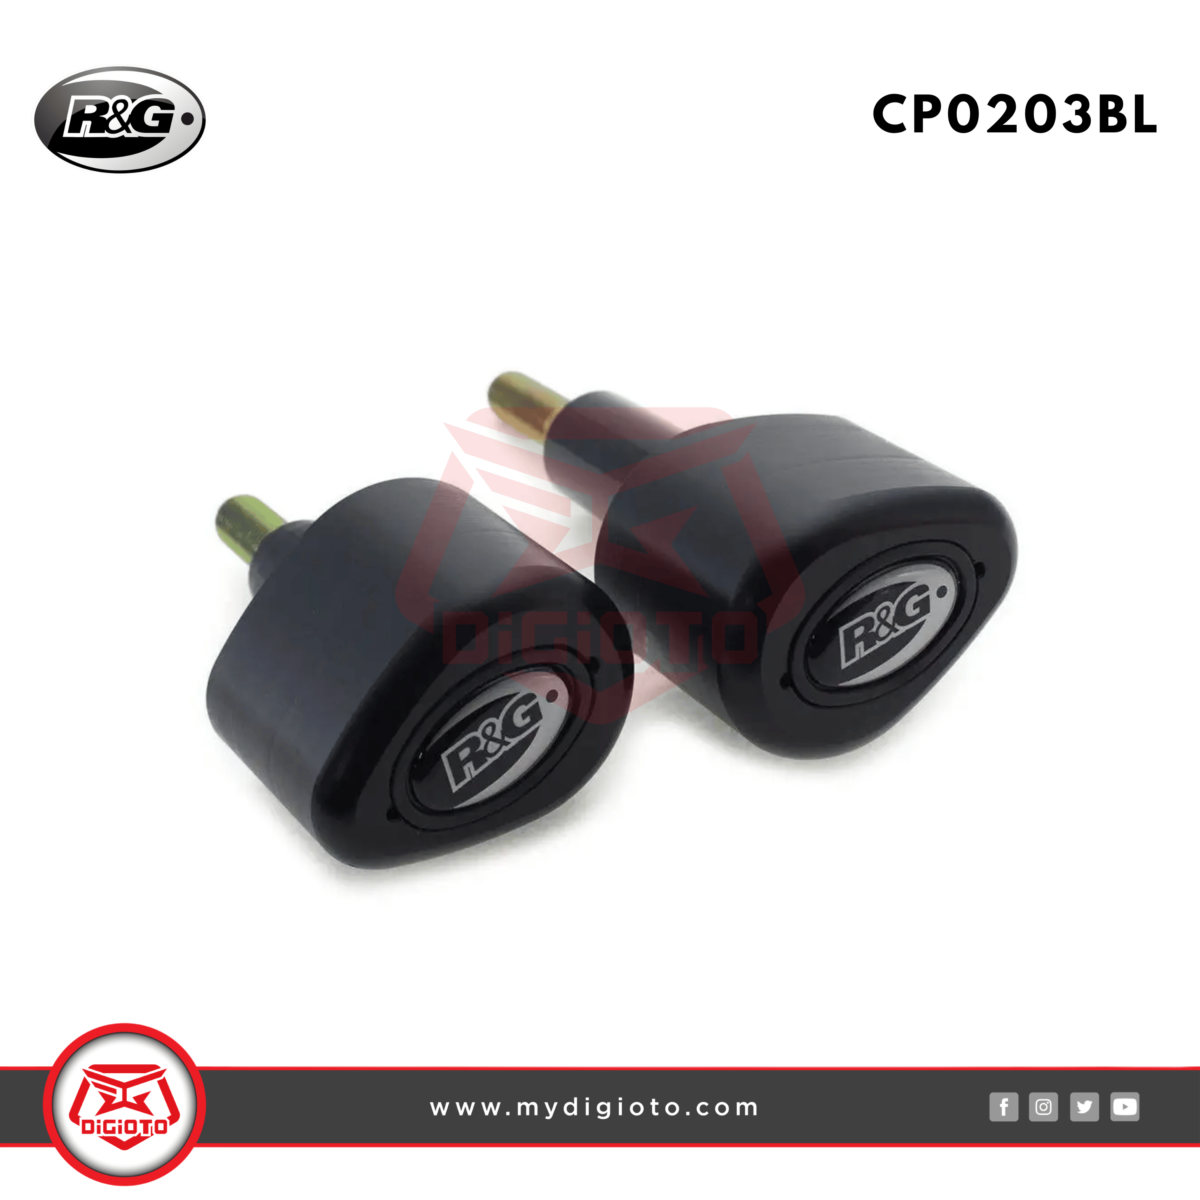 R&G CP0203BL